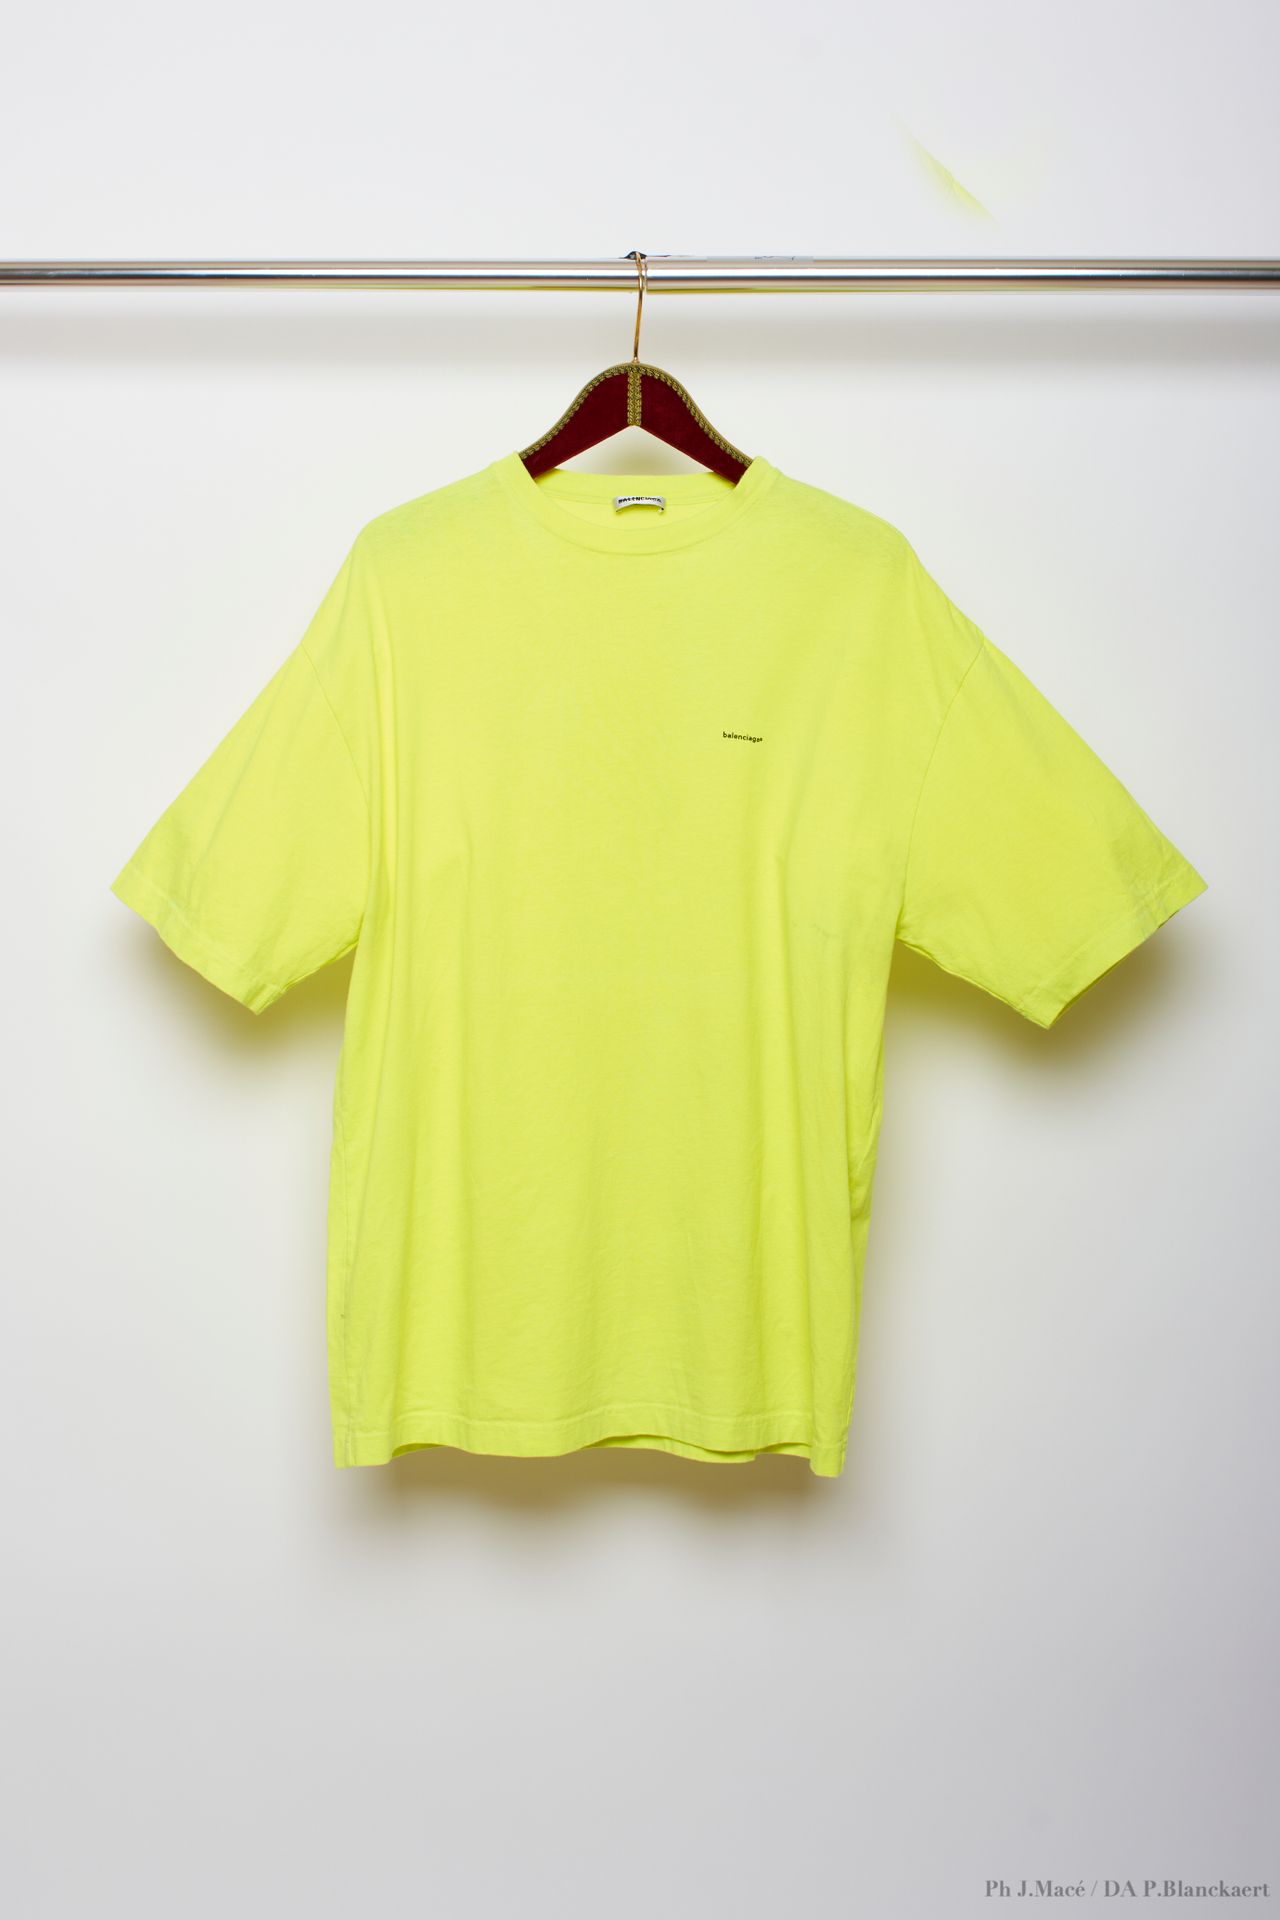 BALENCIAGA - 2018 T-SHIRT
en jersey de coton jaune fluo
T. XS
Soldes du personne&hellip;